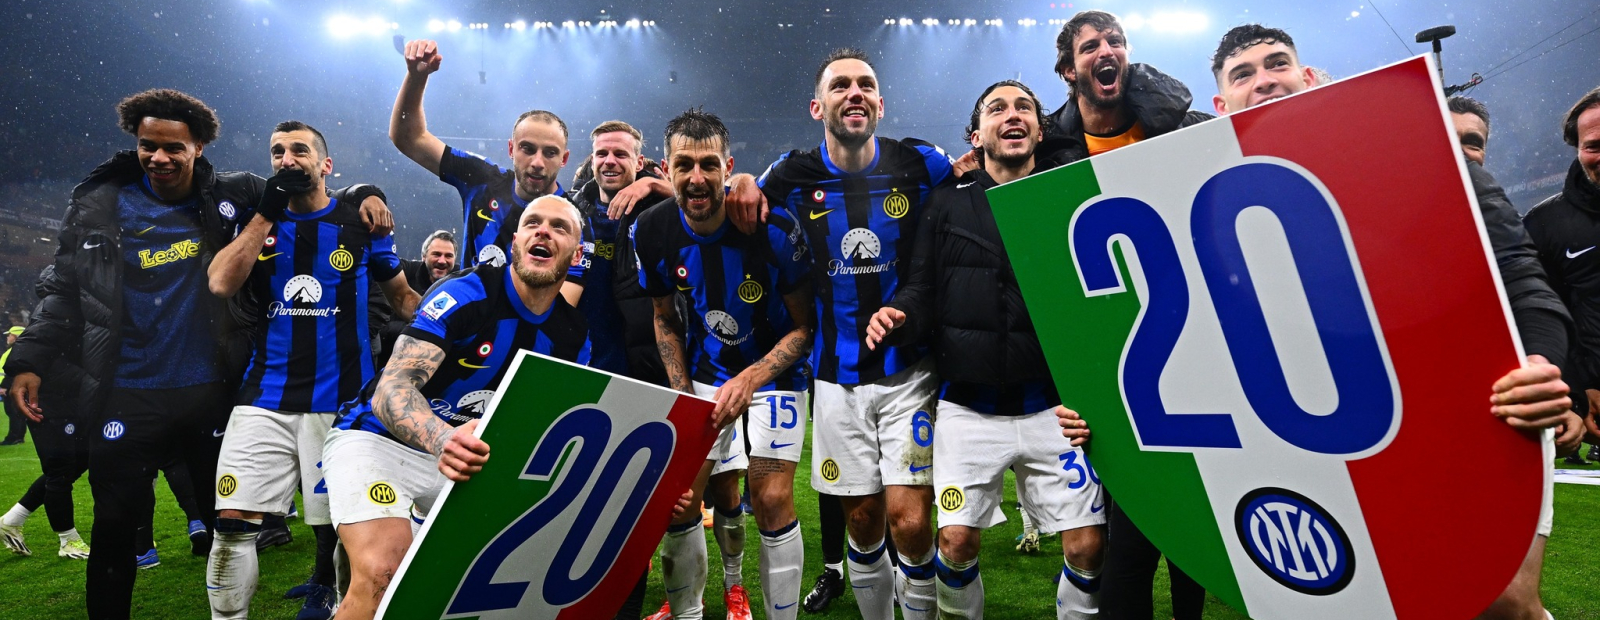 I calciatori dell’Inter si aggiudicano il titolo di scudetto italiano/Giornata